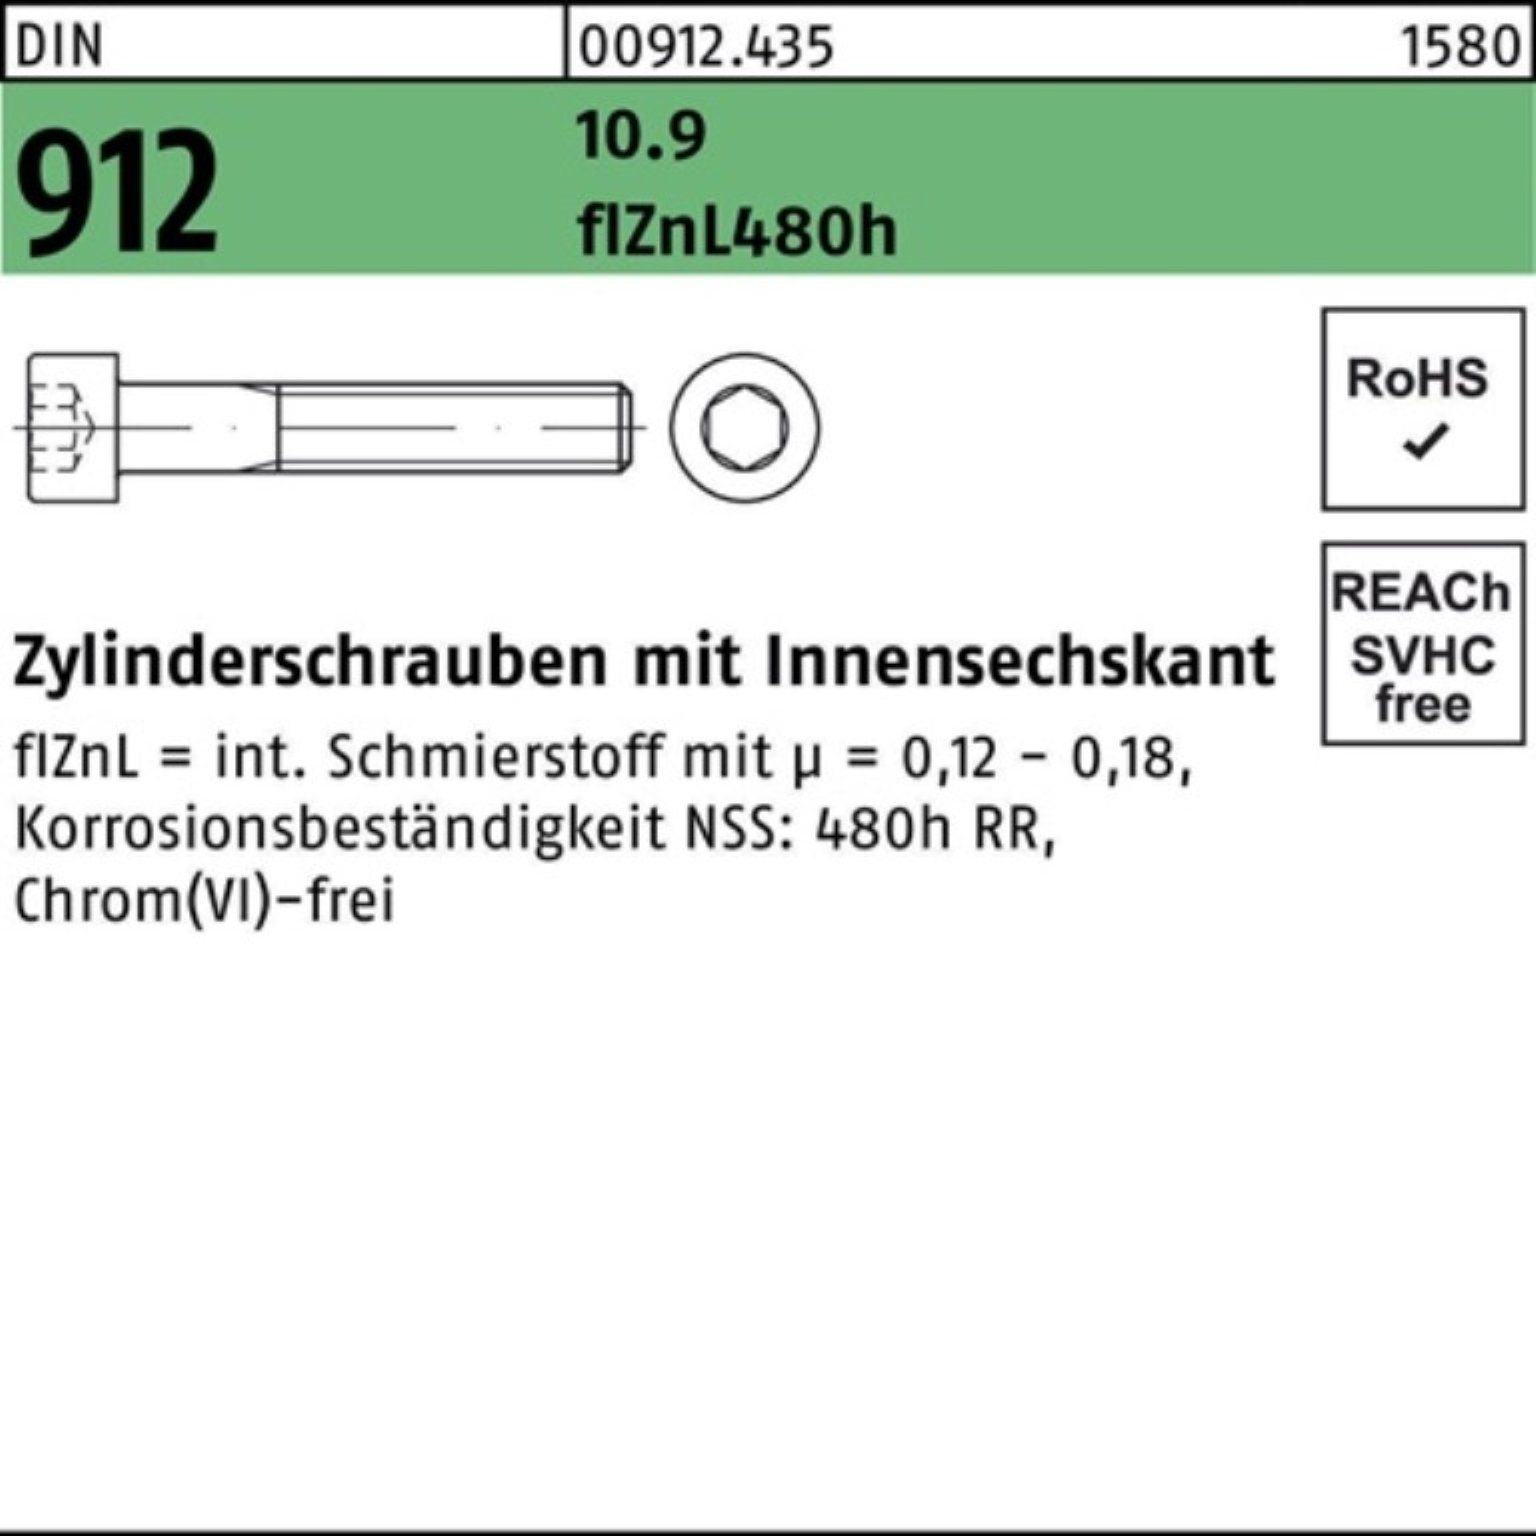 Pack Innen-6kt Zylinderschraube M5x45 DIN flZnL/nc/x/x 912 Reyher Zylinderschraube 10.9 200er